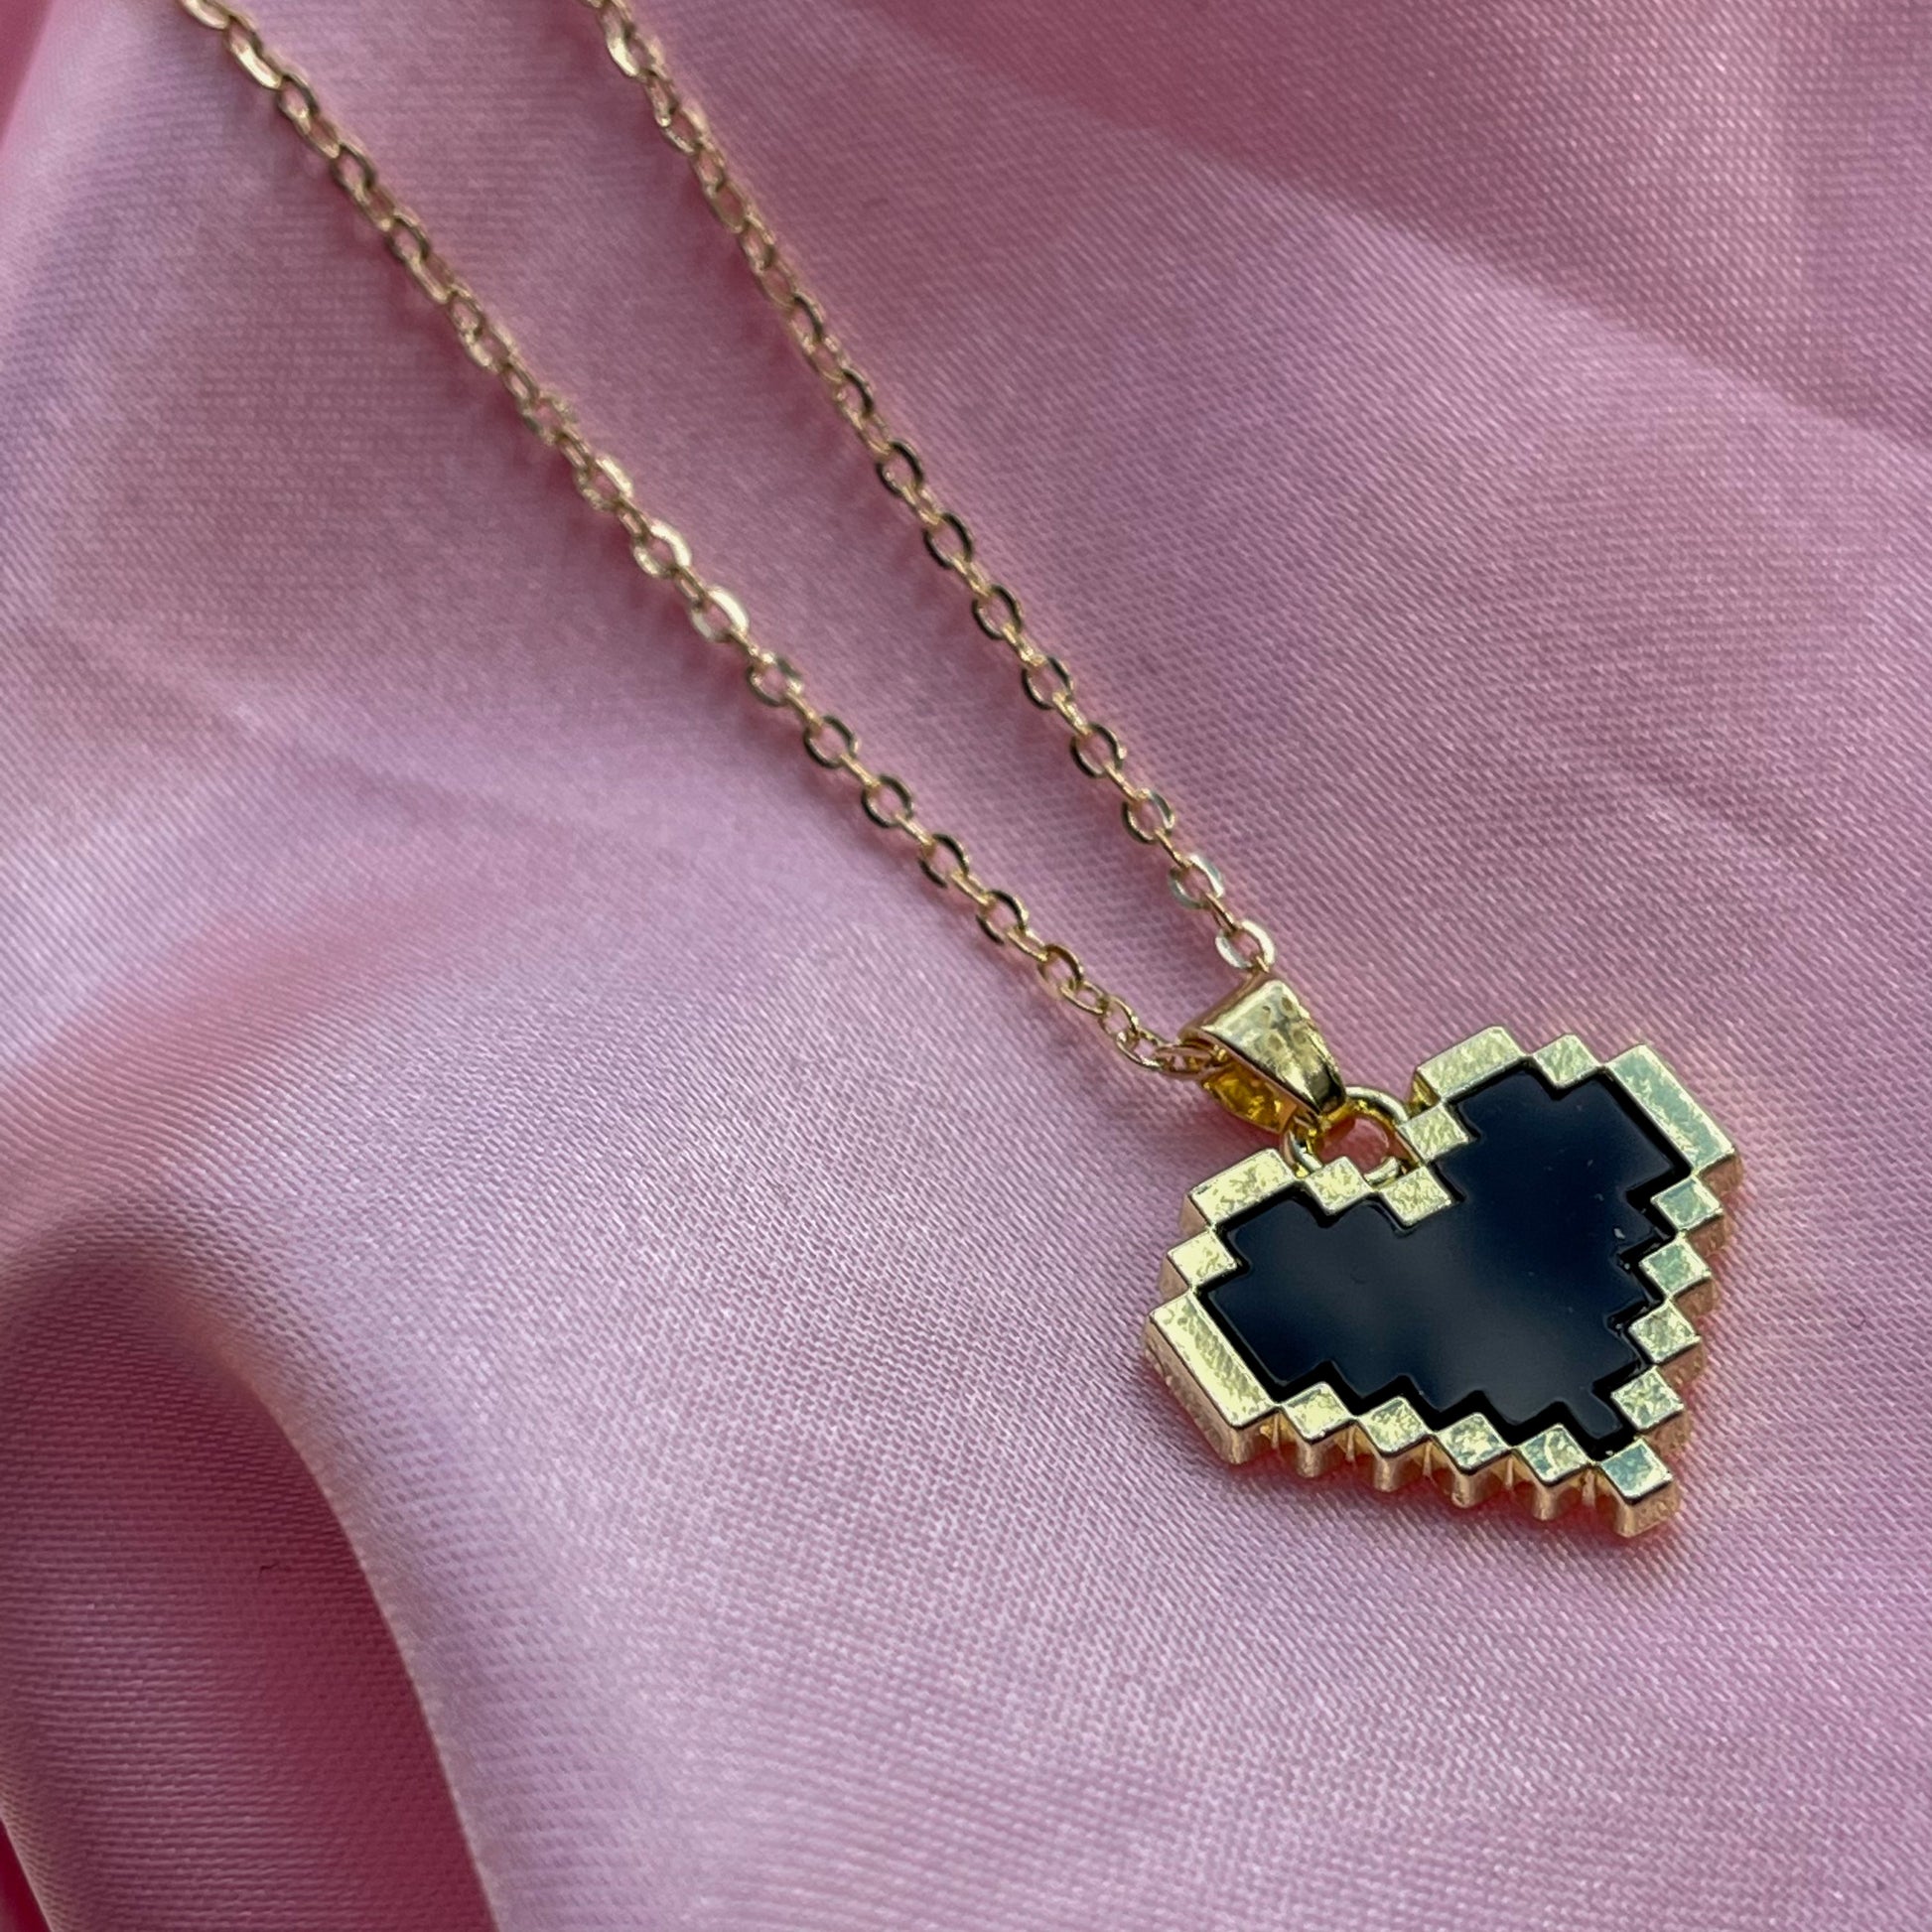 8-bit Heart Pendant Necklace - Lxyclr Authentic